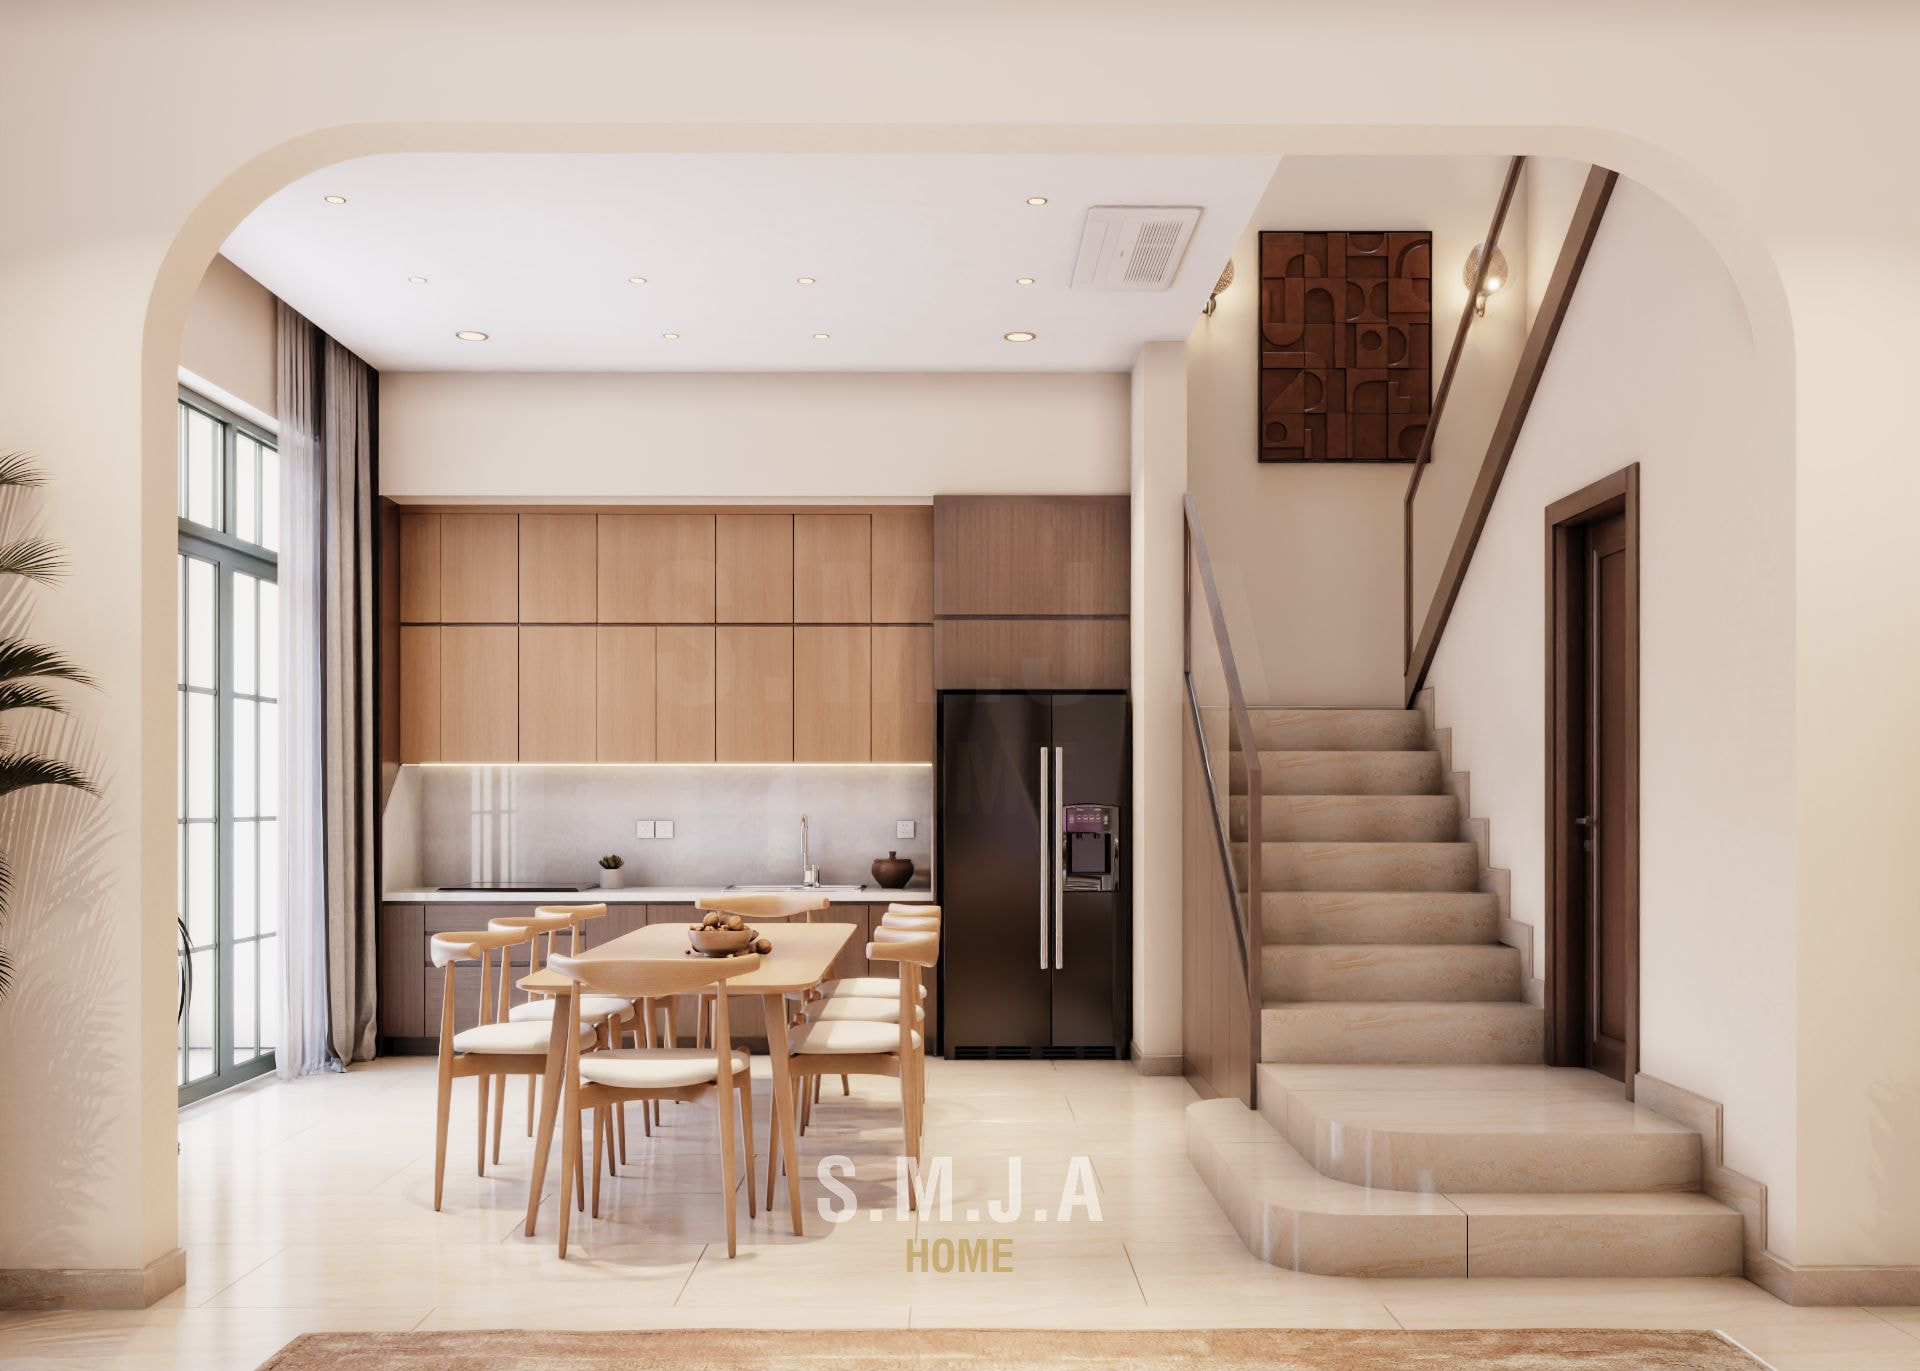 mẫu thiết kế nội thất biệt thự 2 tầng đẹp hiện đại tại Sun Tropical Village Phú Quốc